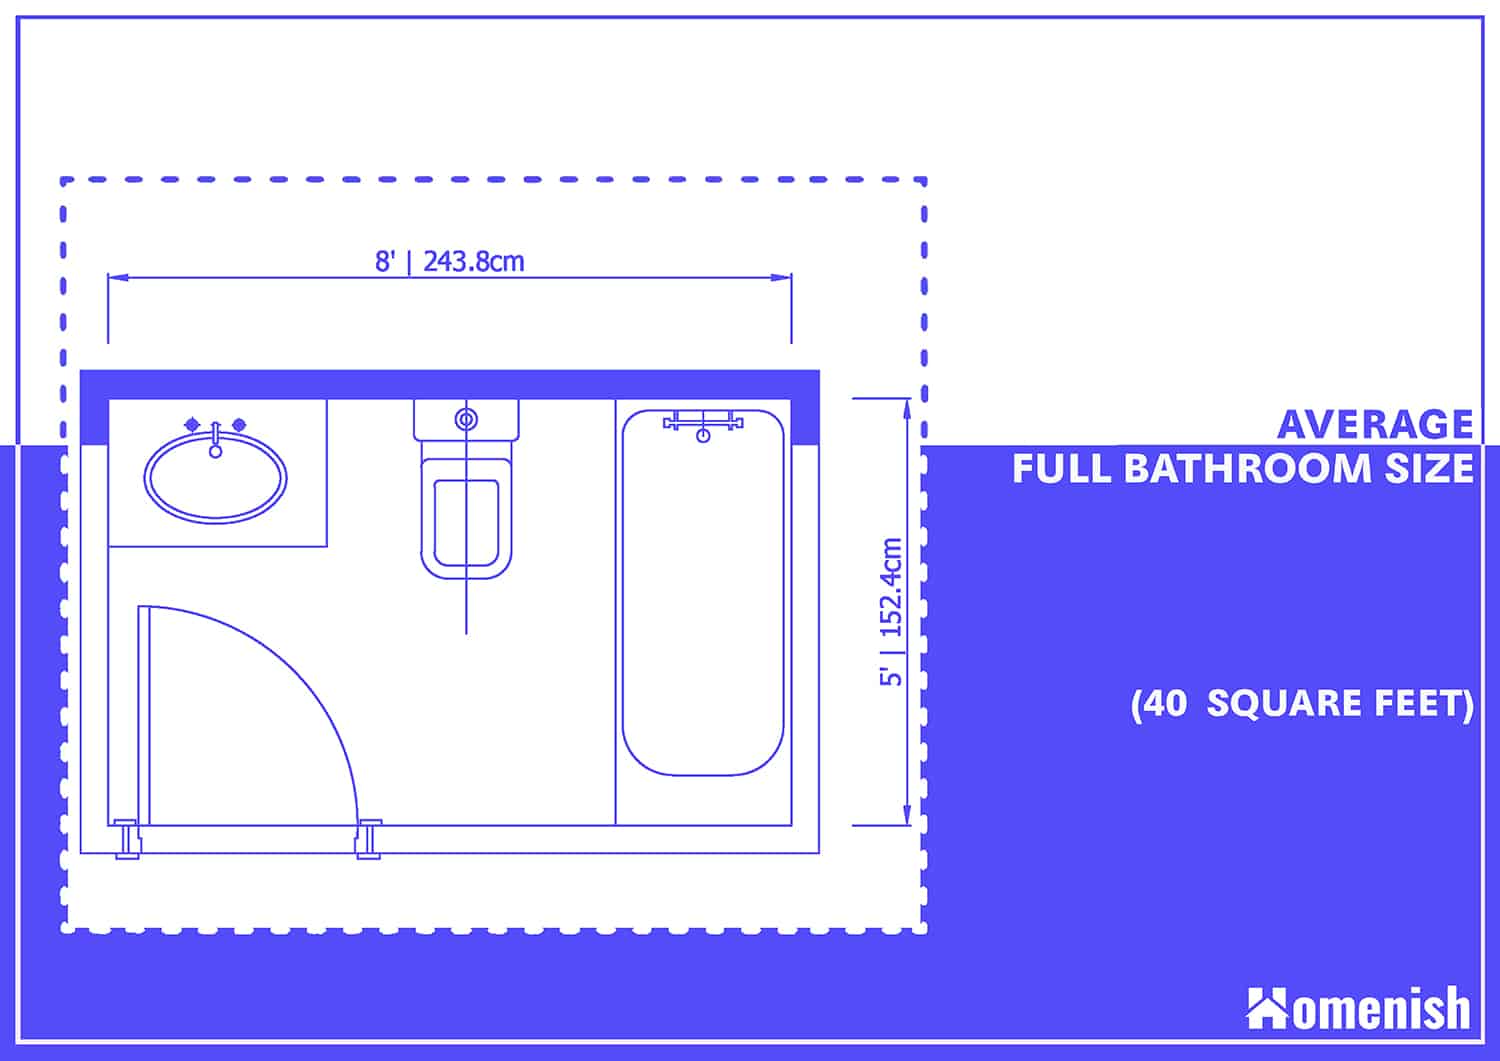 平均全浴室尺寸